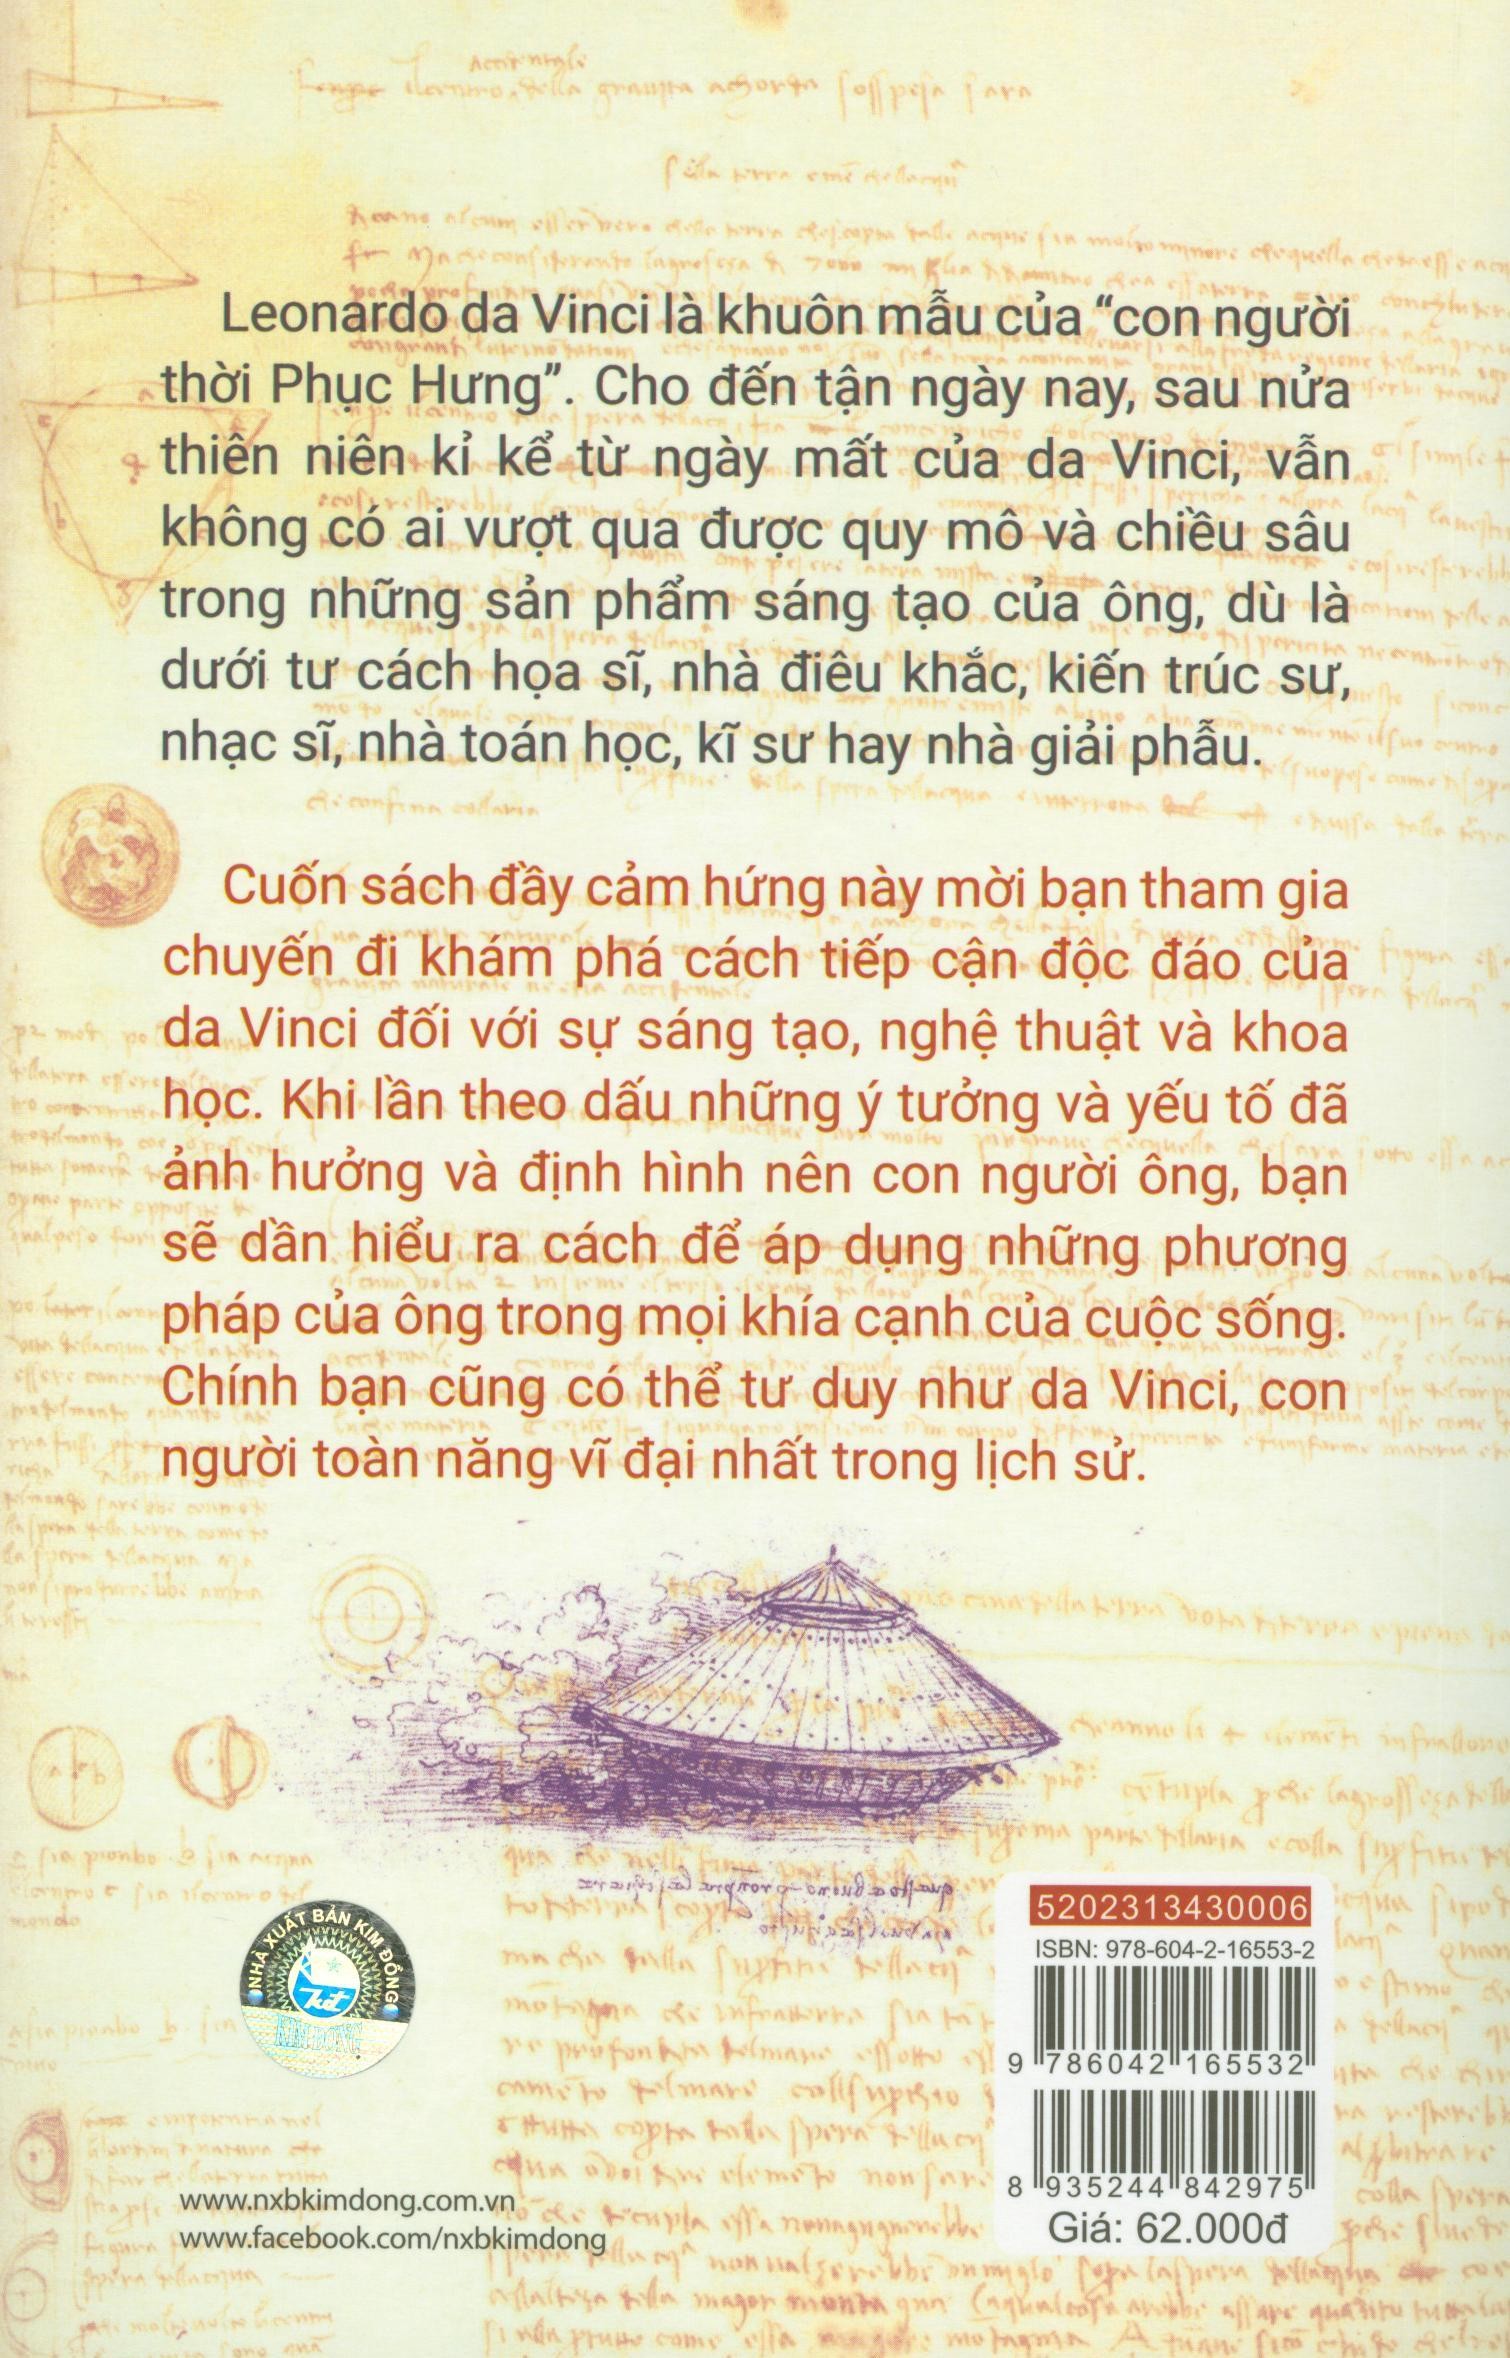 Tư Duy Như Da Vinci PDF